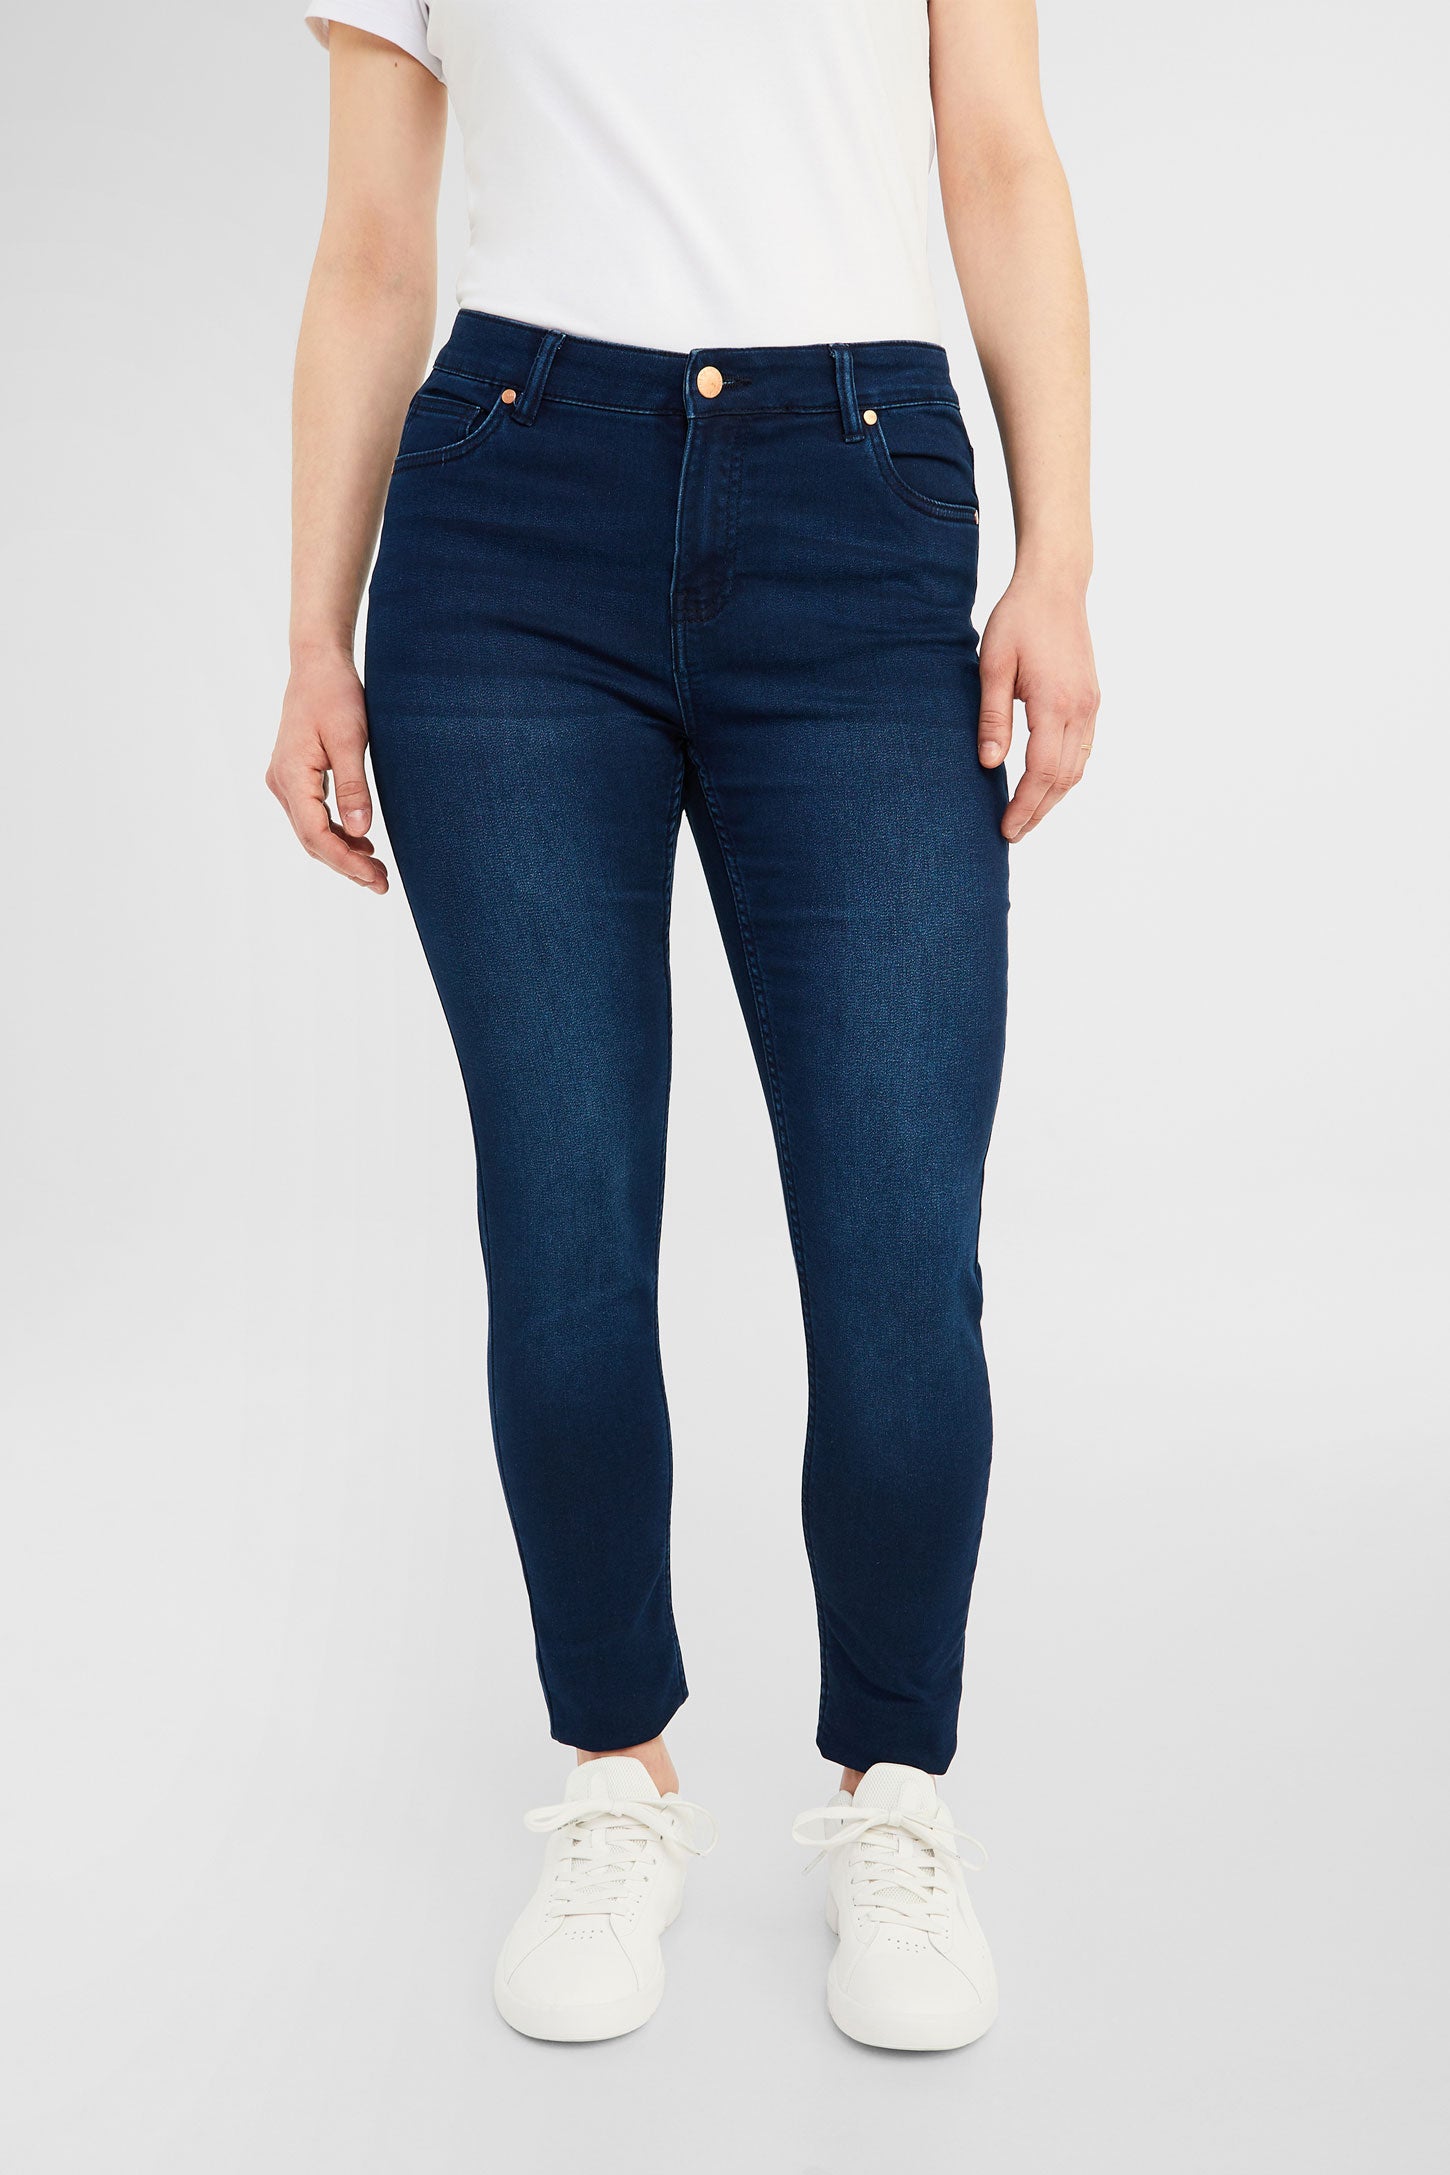 Jeans coupe ajustée - Femme && BLEU FONCÉ